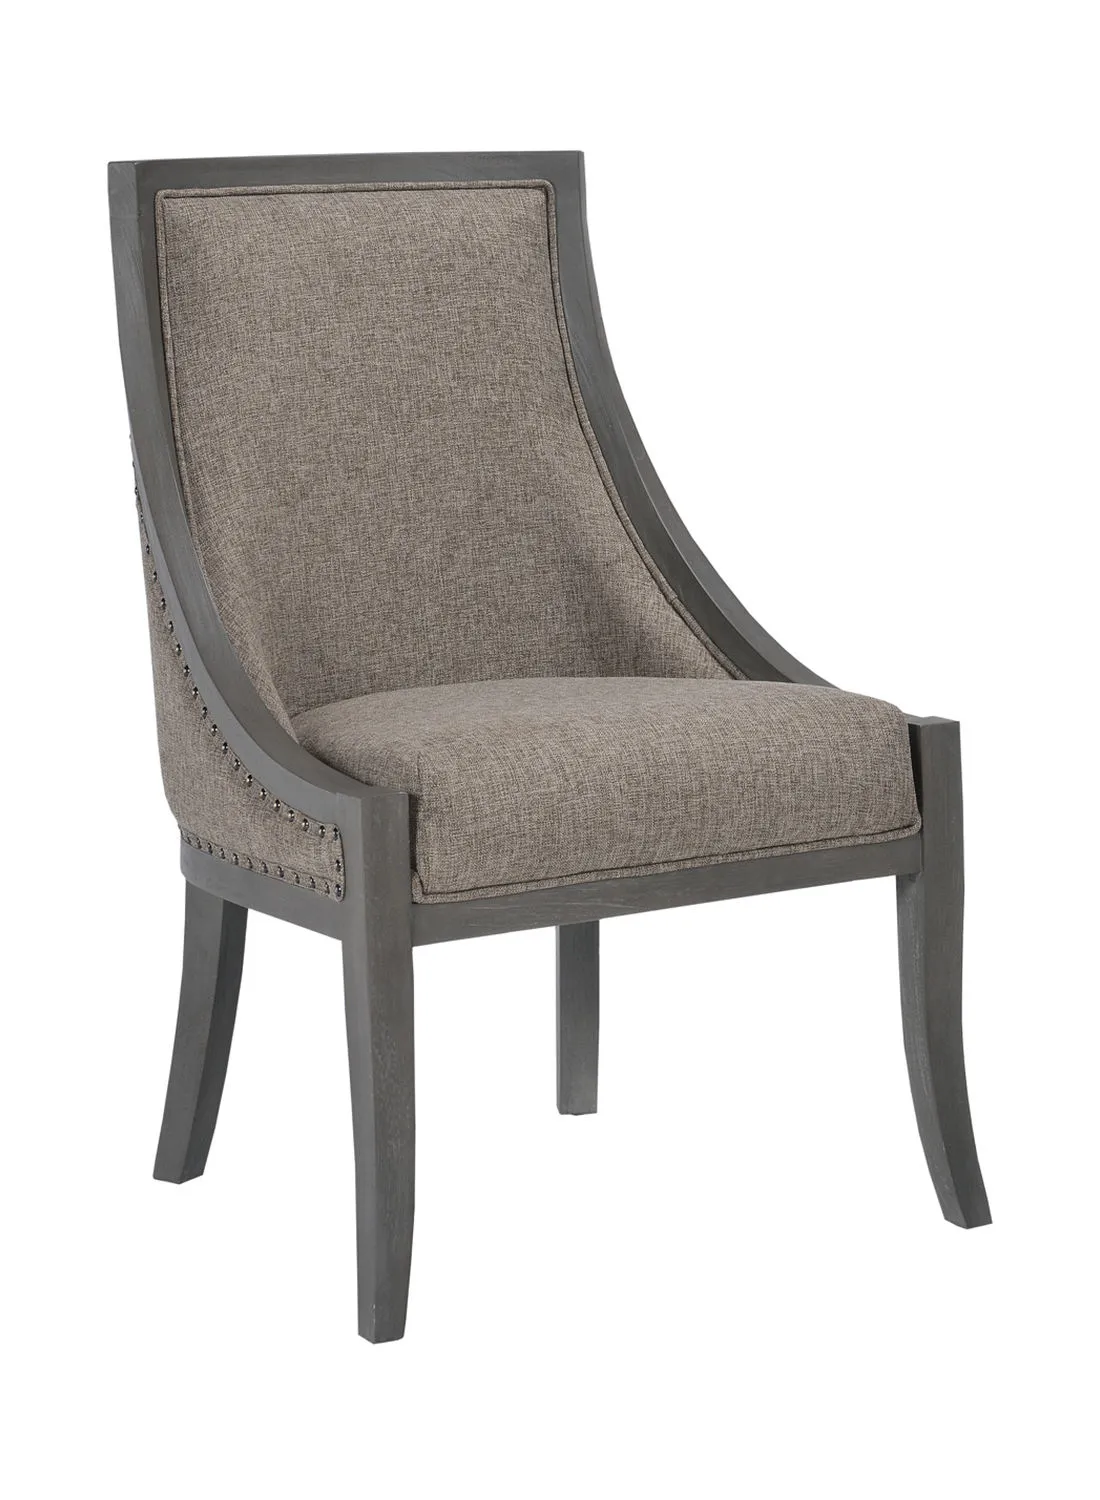 ebb & flow Armchair Luxurious - In Oak Wooden Chair Size 64 X 62 X 96.5